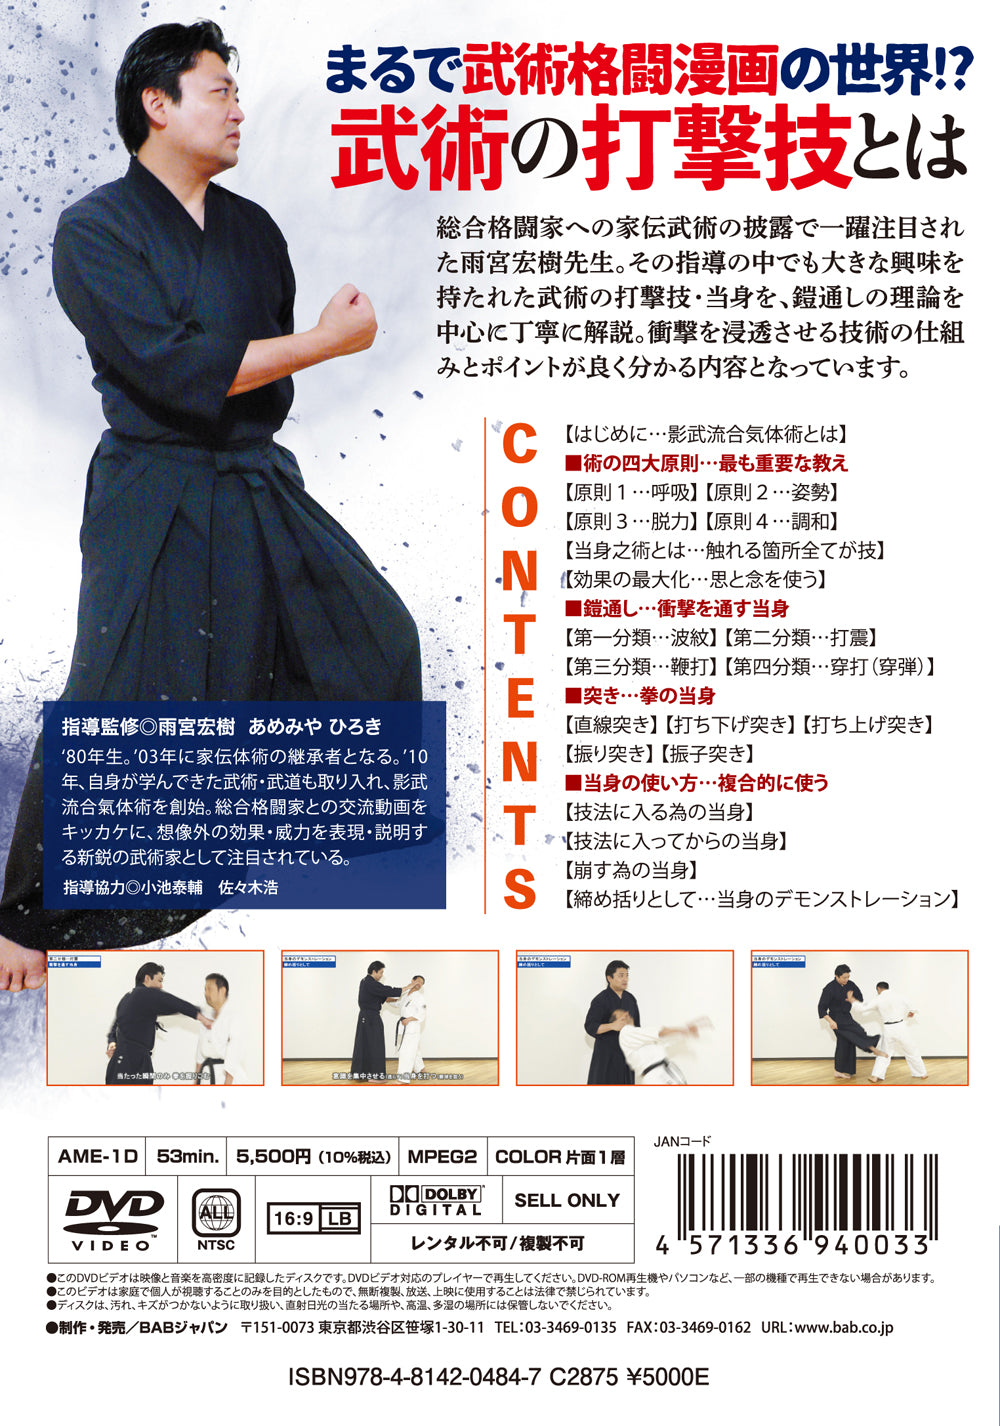 DVD Keibu Ryu Aiki Taijutsu de Yusuke Yachi